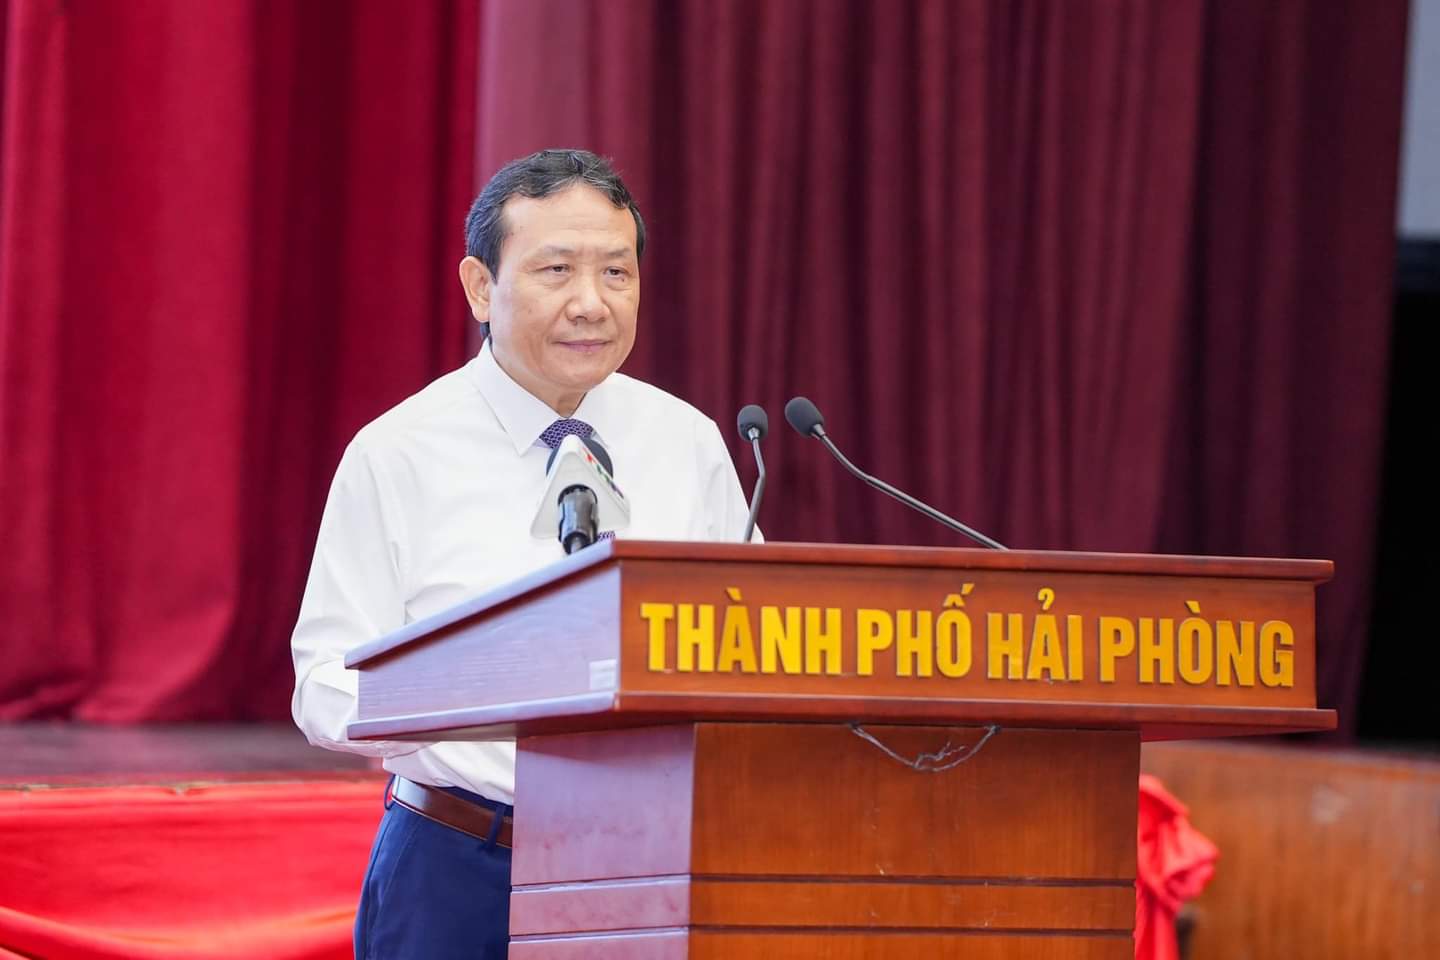 Ông Nguyễn Hồng Sơn, Phó trưởng ban Ban kinh tế Trung ương phát biểu tại Hội nghị. Ảnh: Thanh Sơn